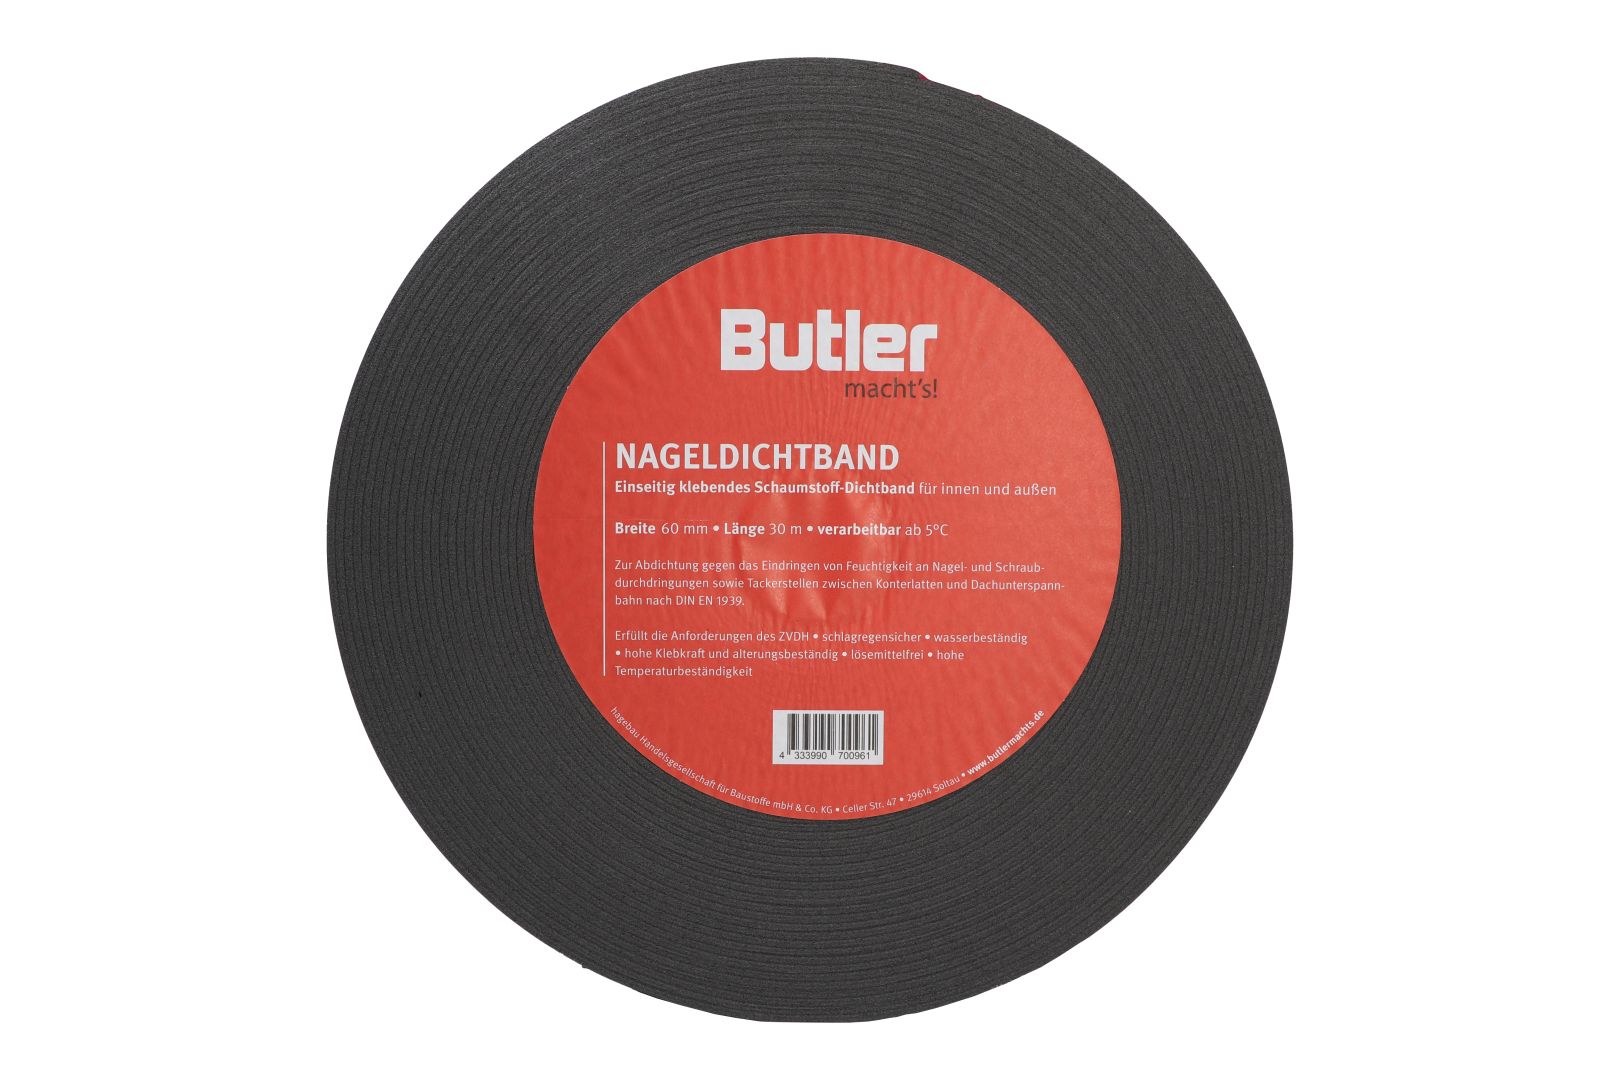 Butler macht's! Nageldichtband, einseitig selbstklebend, Rolle, 30 m x 60 mm